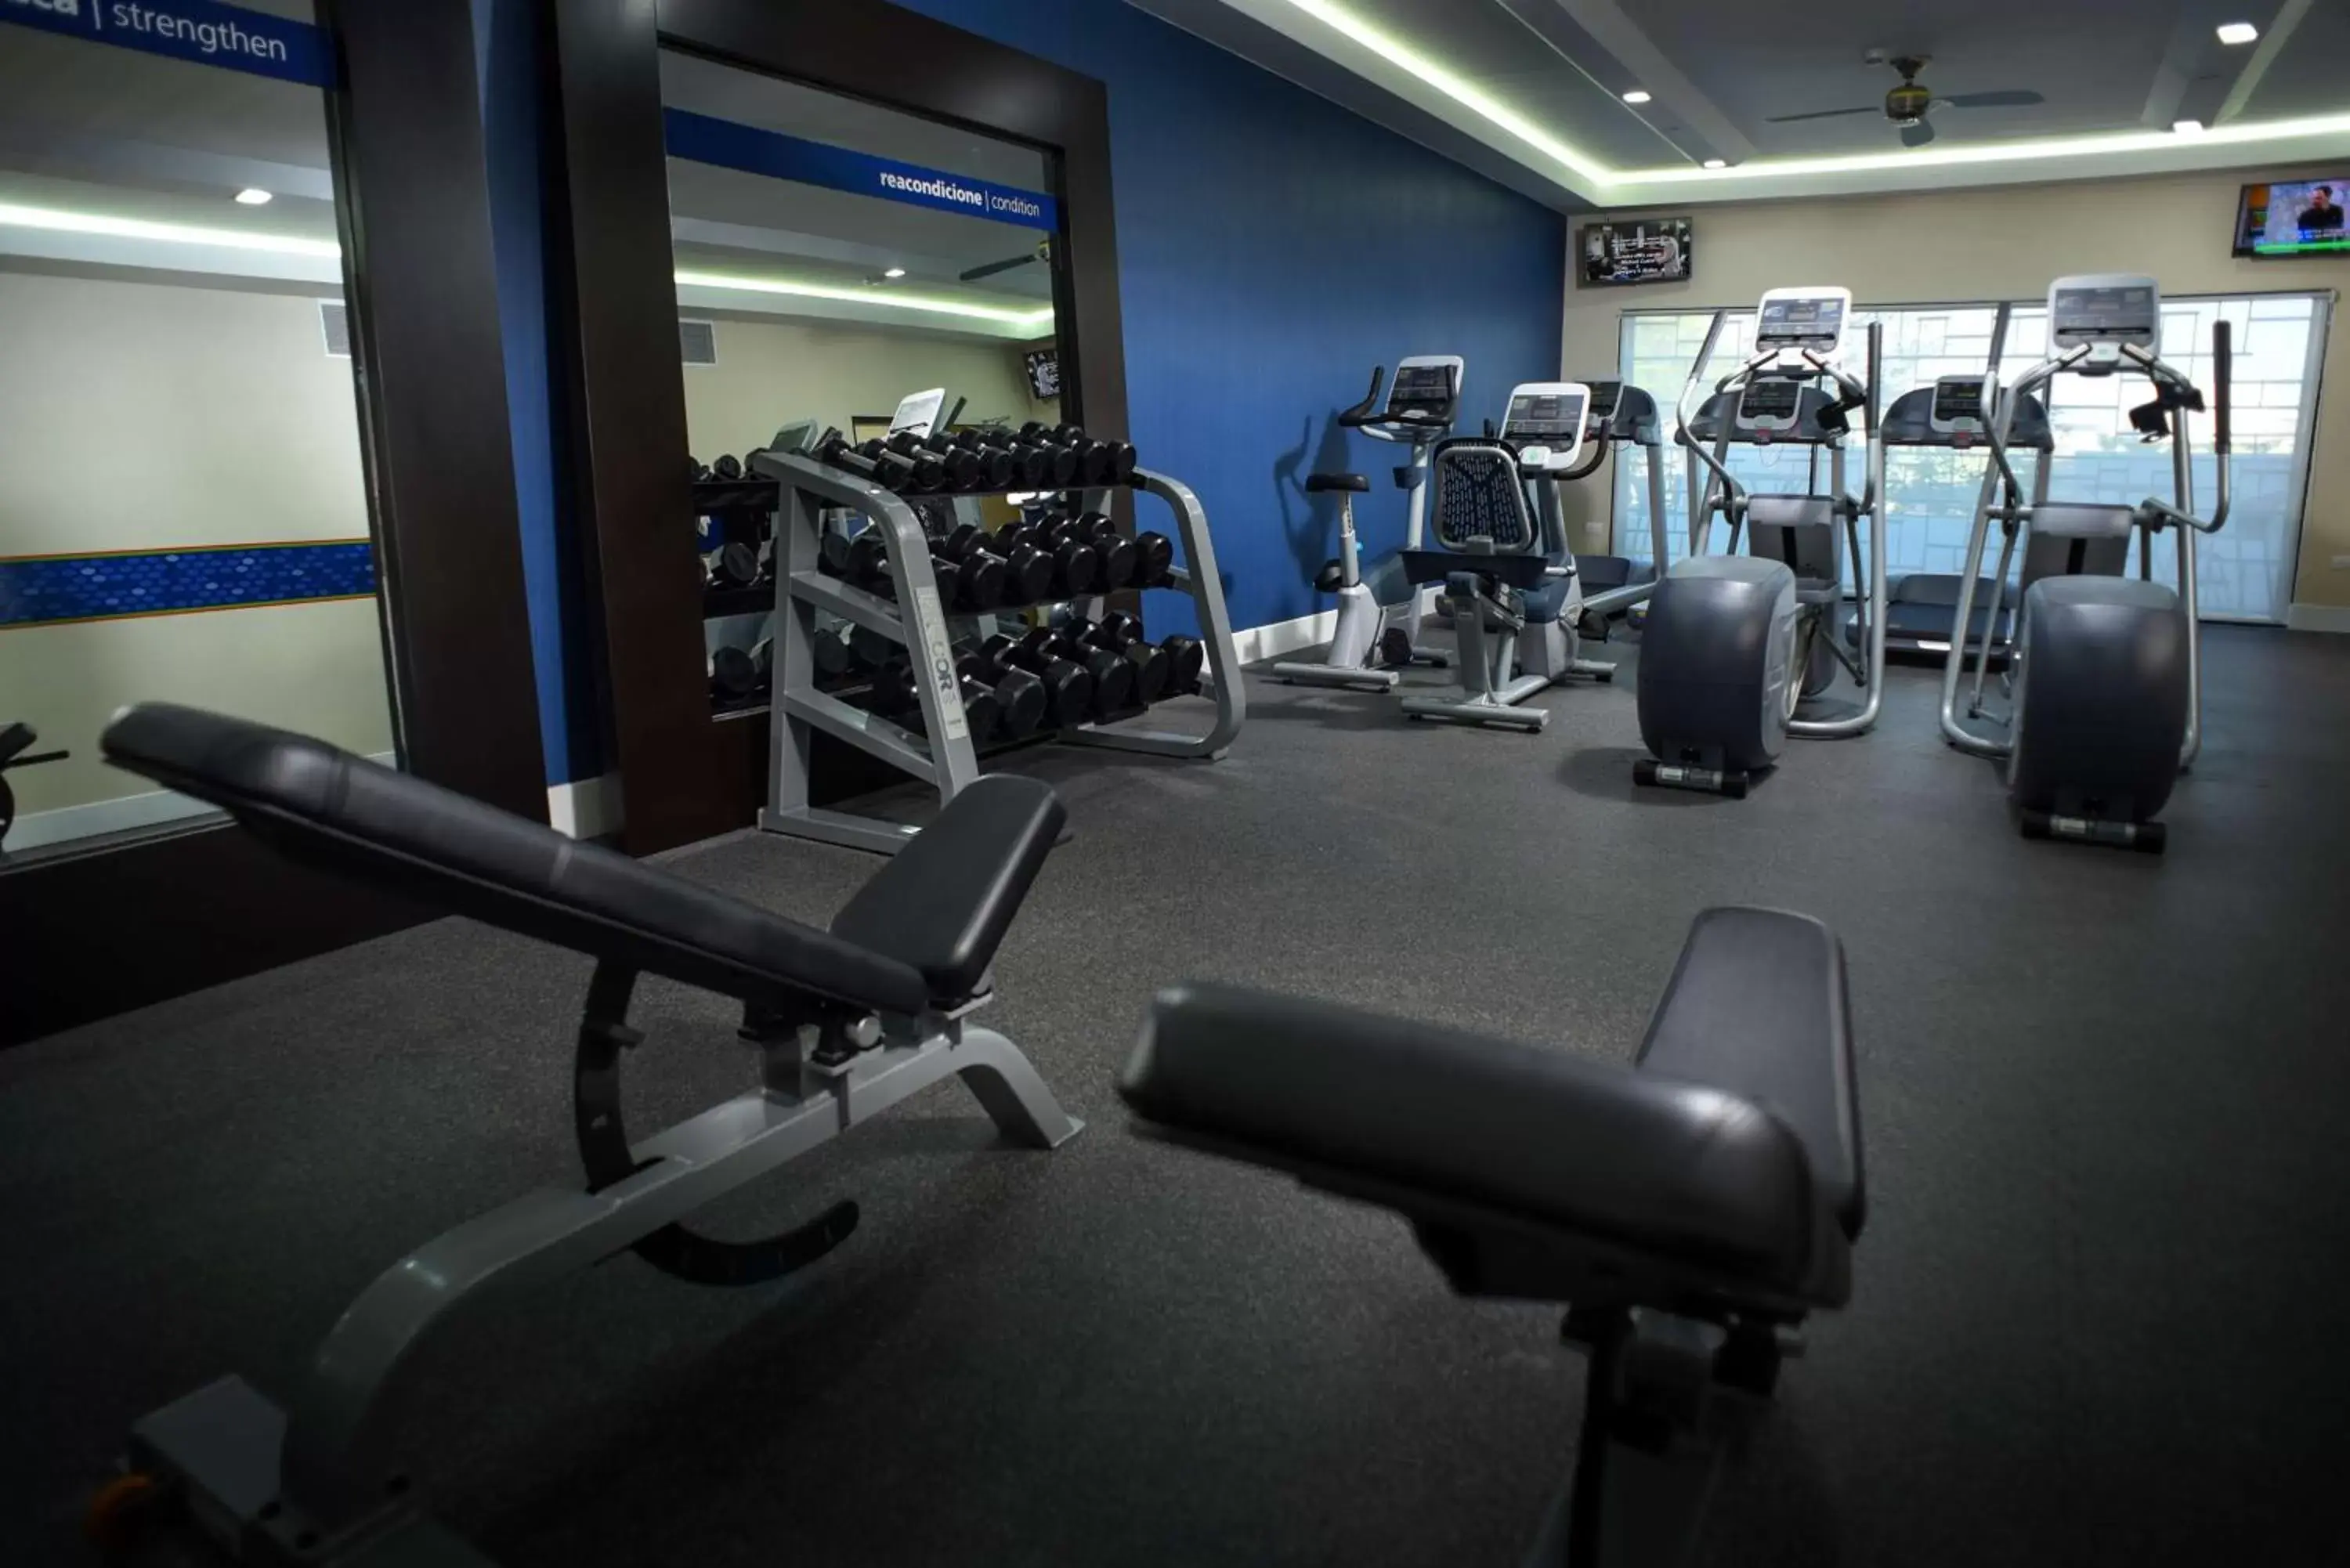 Fitness centre/facilities, Fitness Center/Facilities in Hampton Inn Piedras Negras